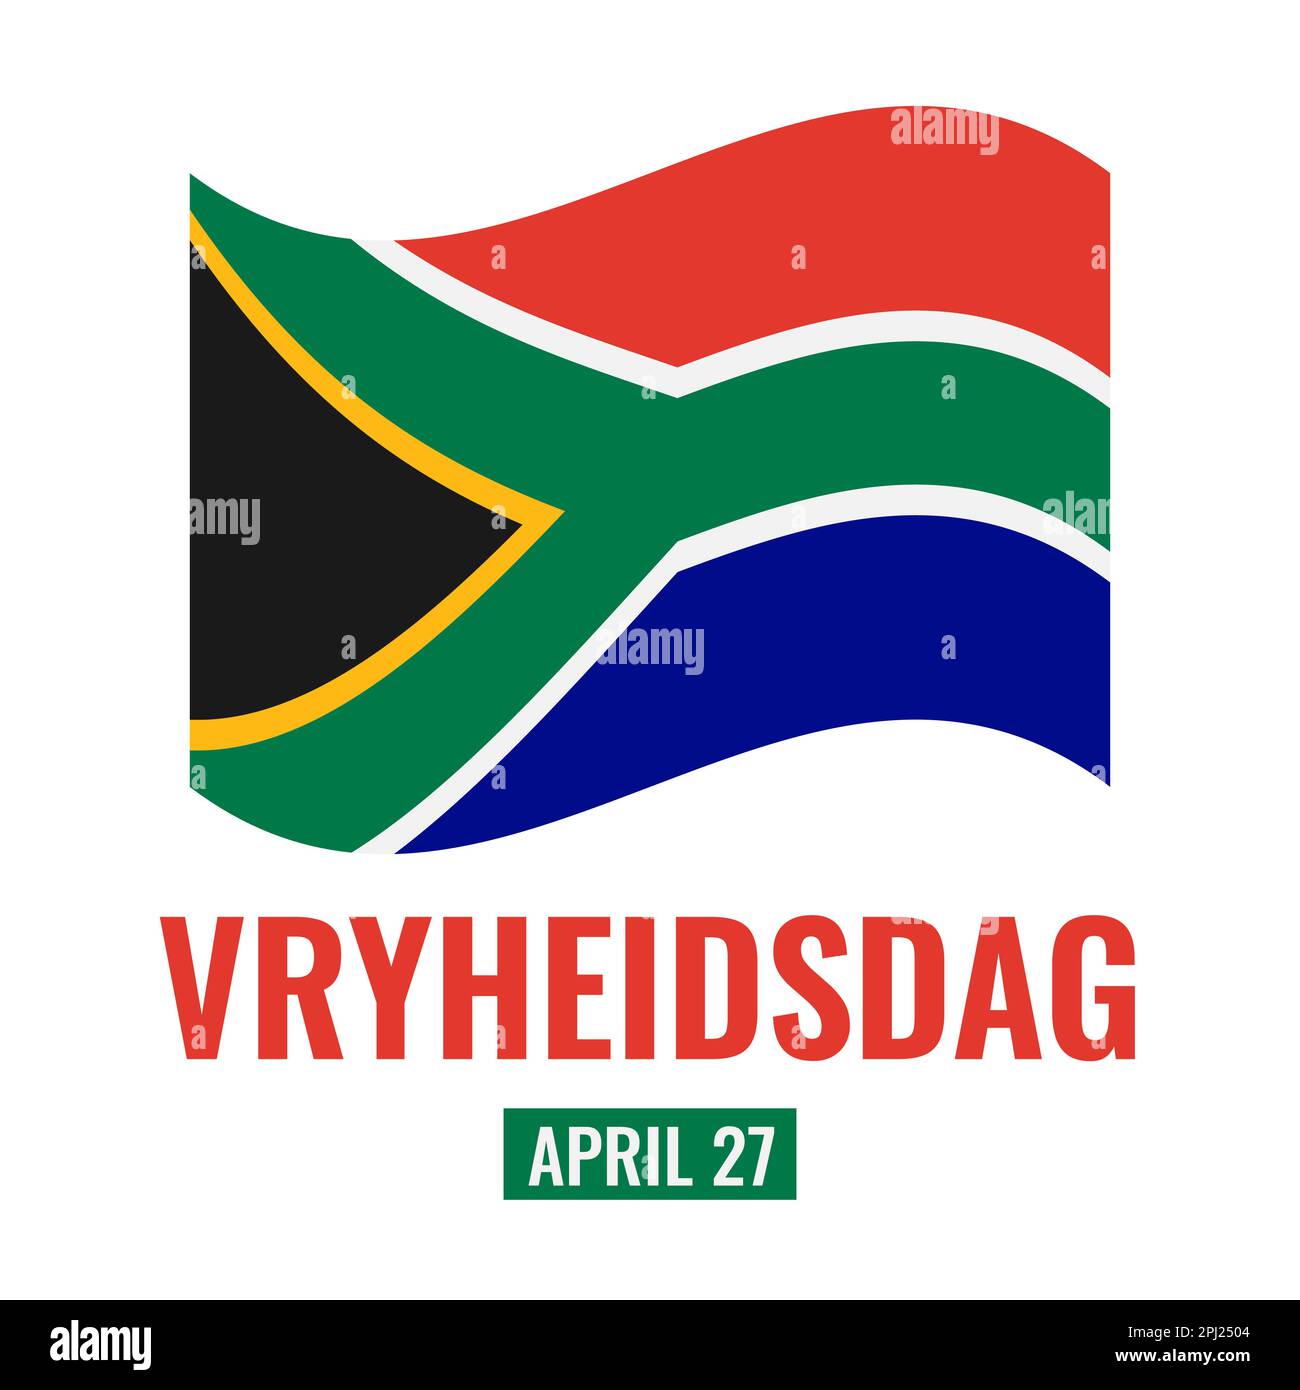 Vryheidsdag - Südafrikanischer Freiheitstag. Feiertage am 27. April. Vektorvorlage für Typografie Poster, Banner, Flyer, Grußkarte, S. Stock Vektor